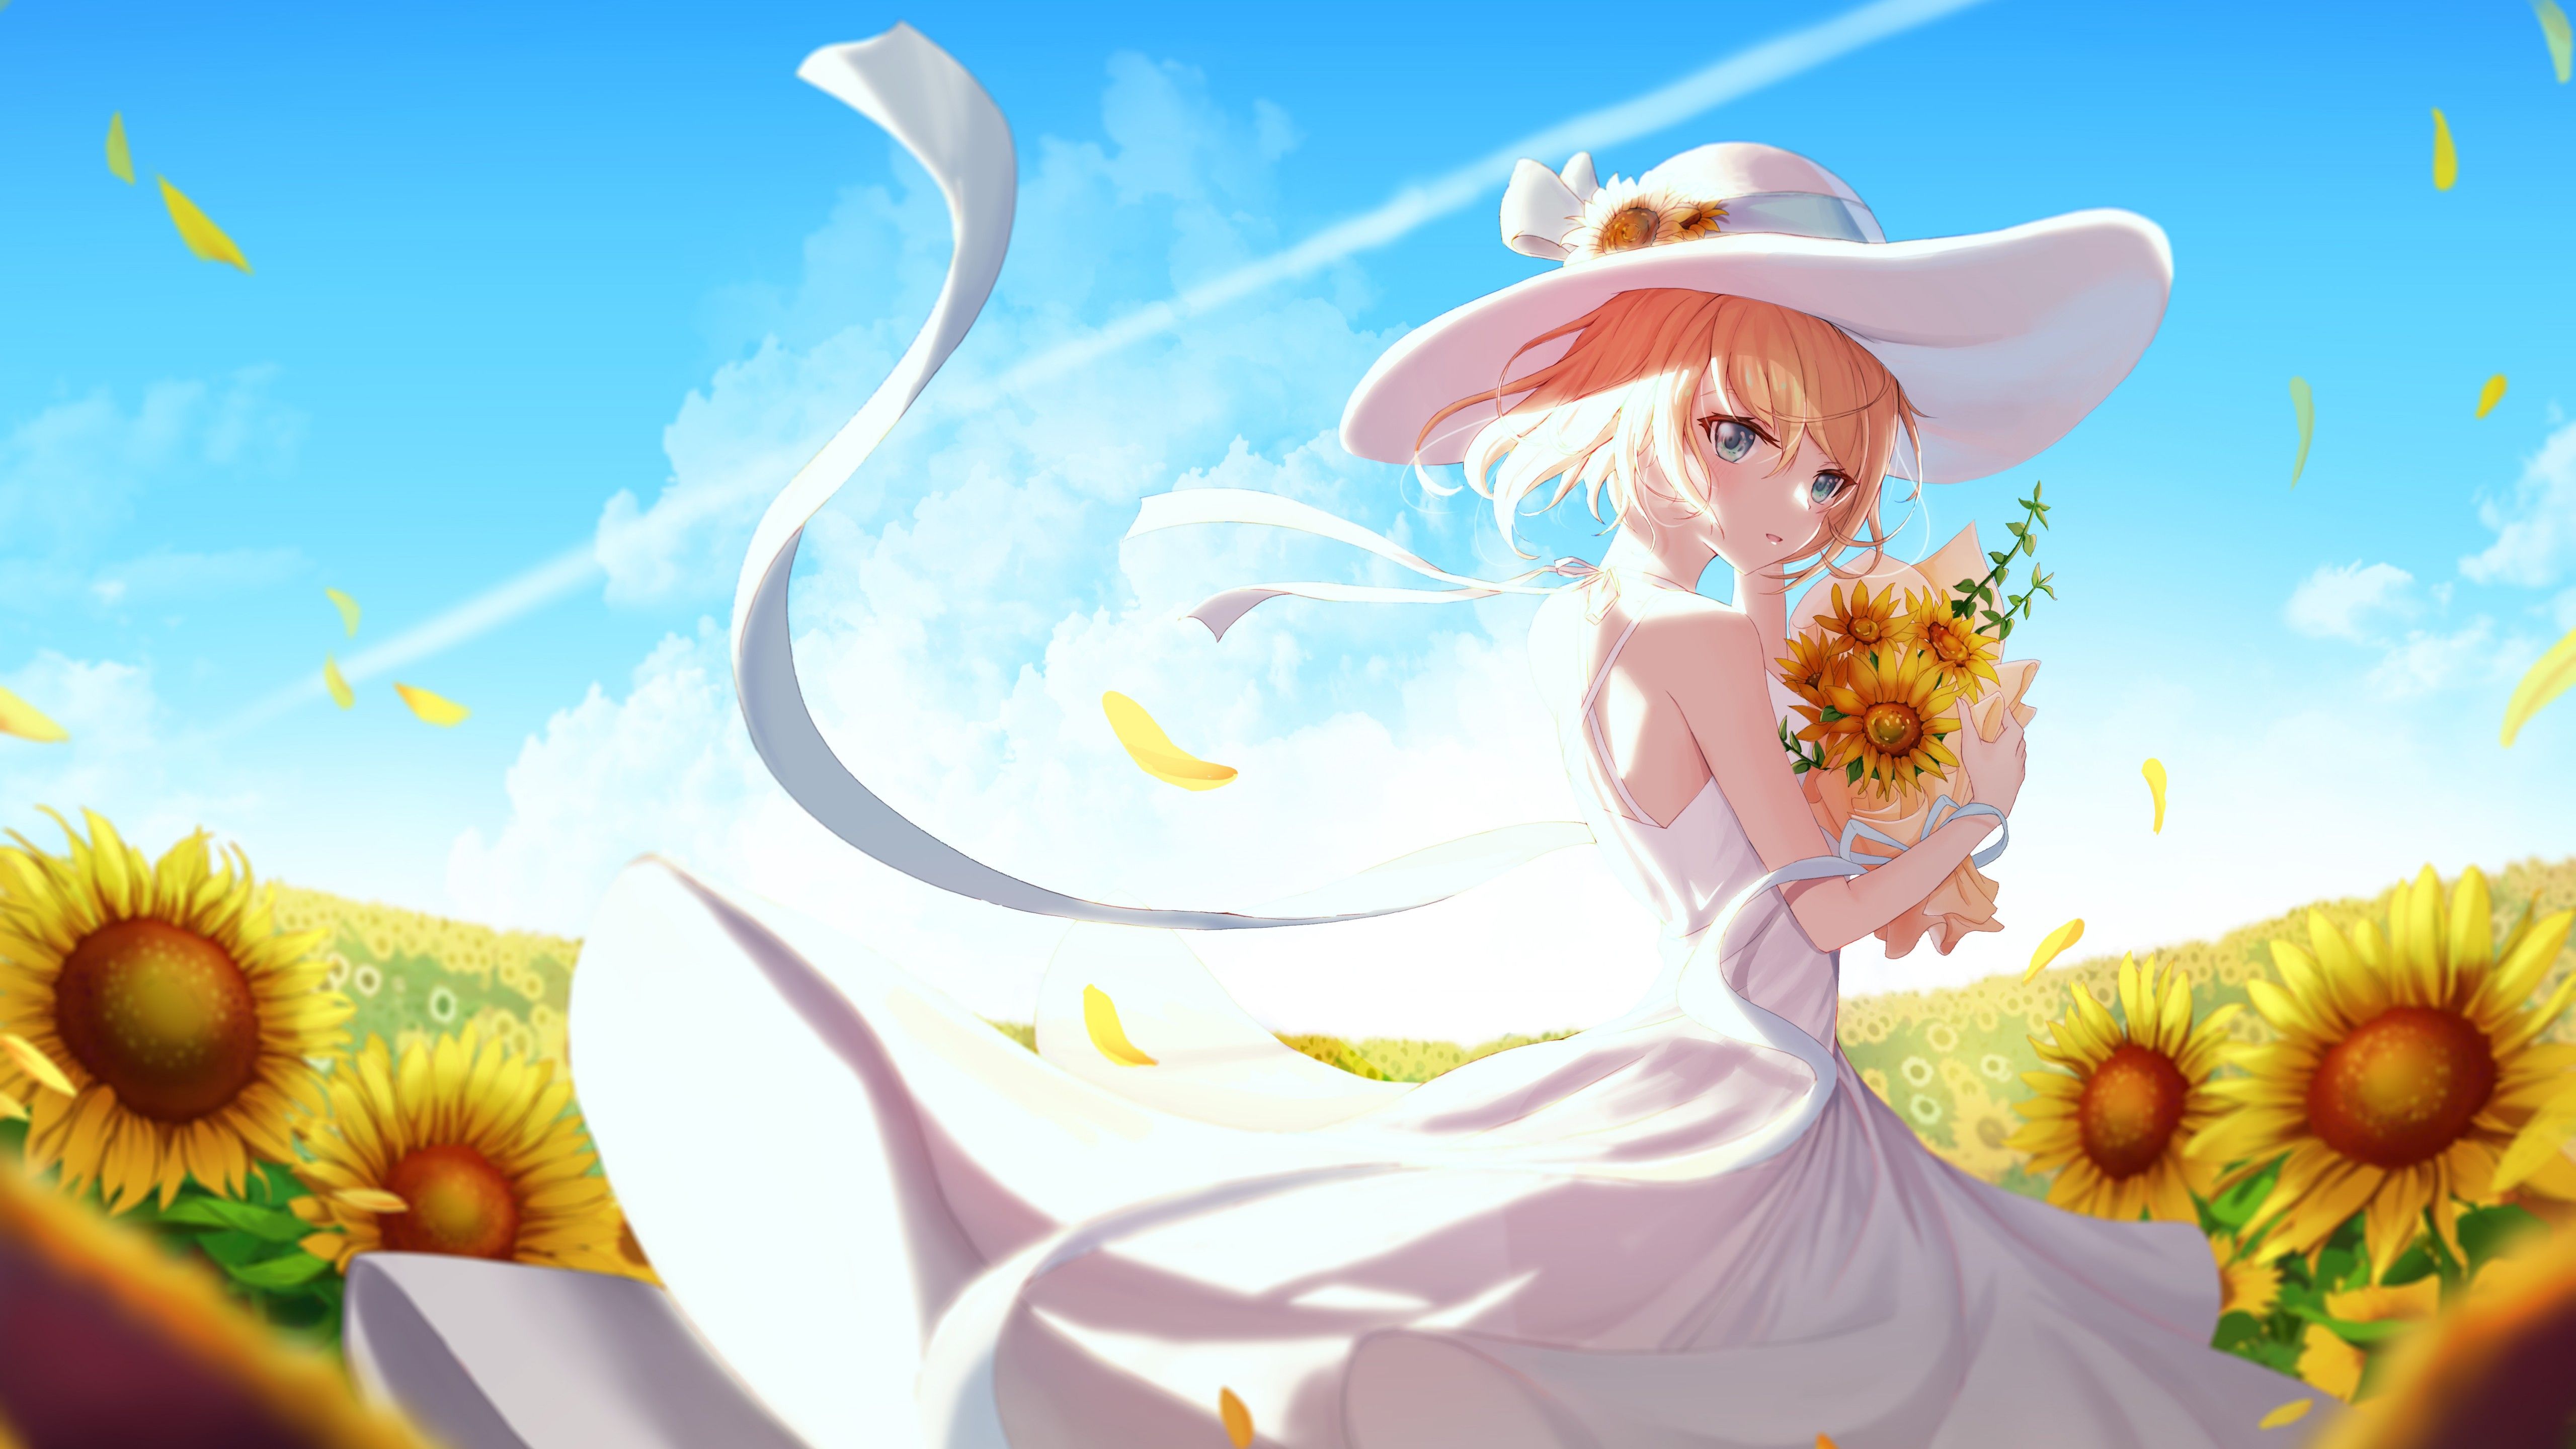 Anime girl 4K Wallpaper, Sunflowers, Sunny day, 5K, Fantasy